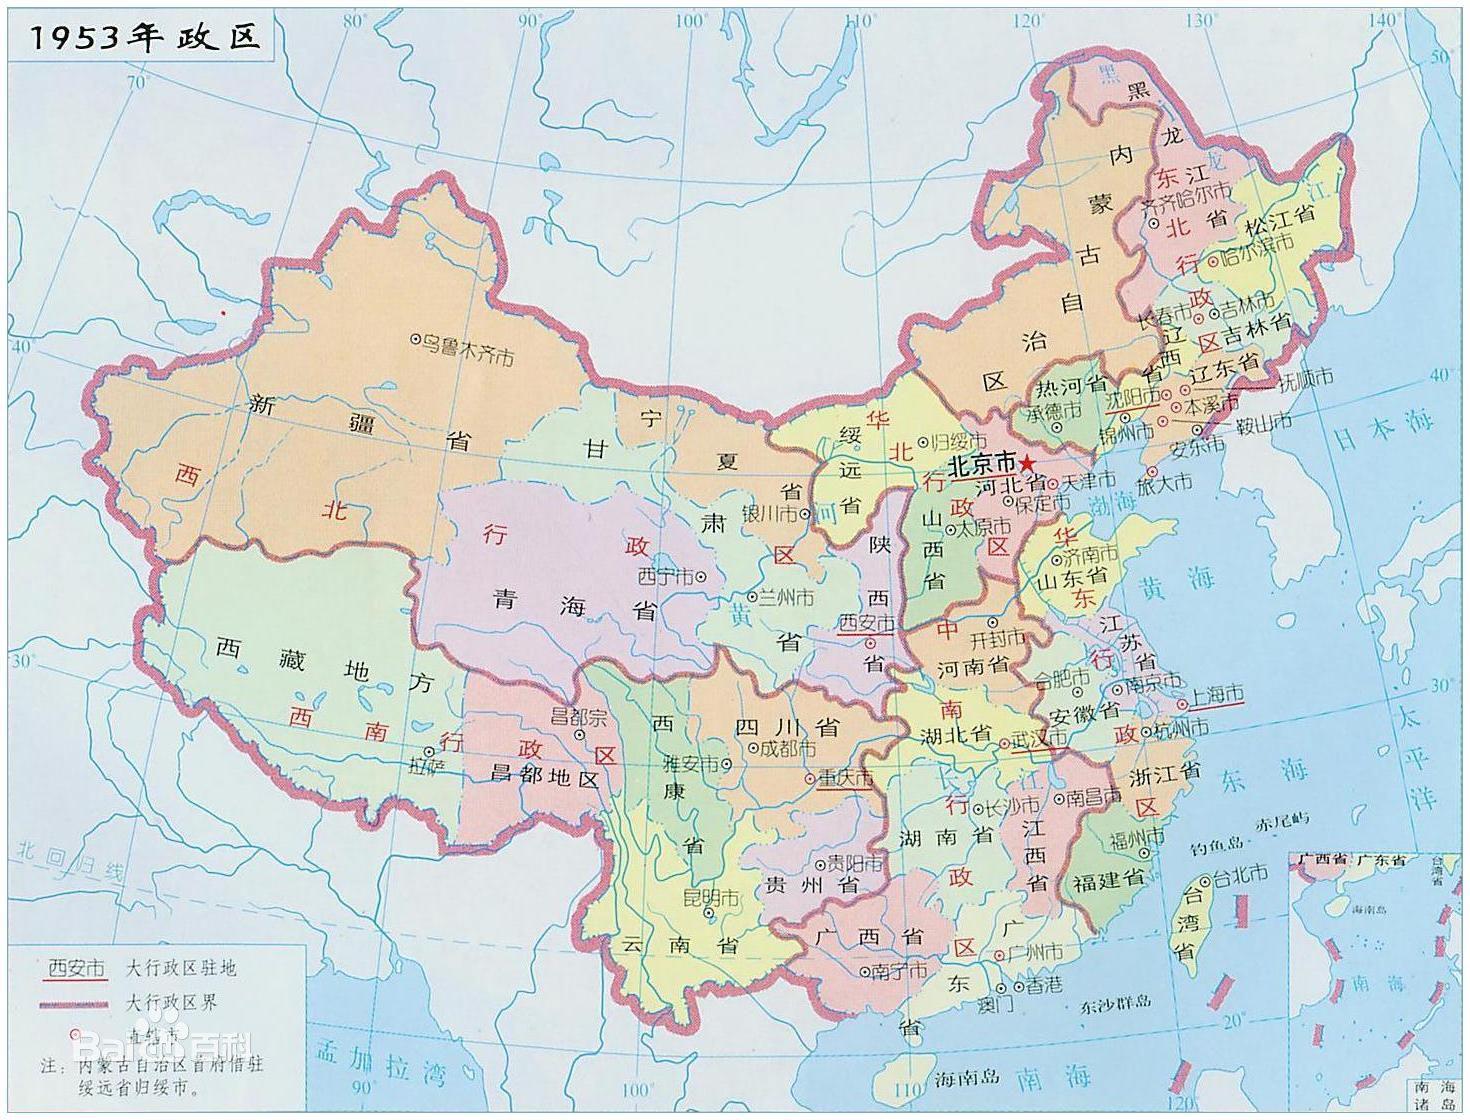 为什么国家划分区域将山东划分为华东而大部分